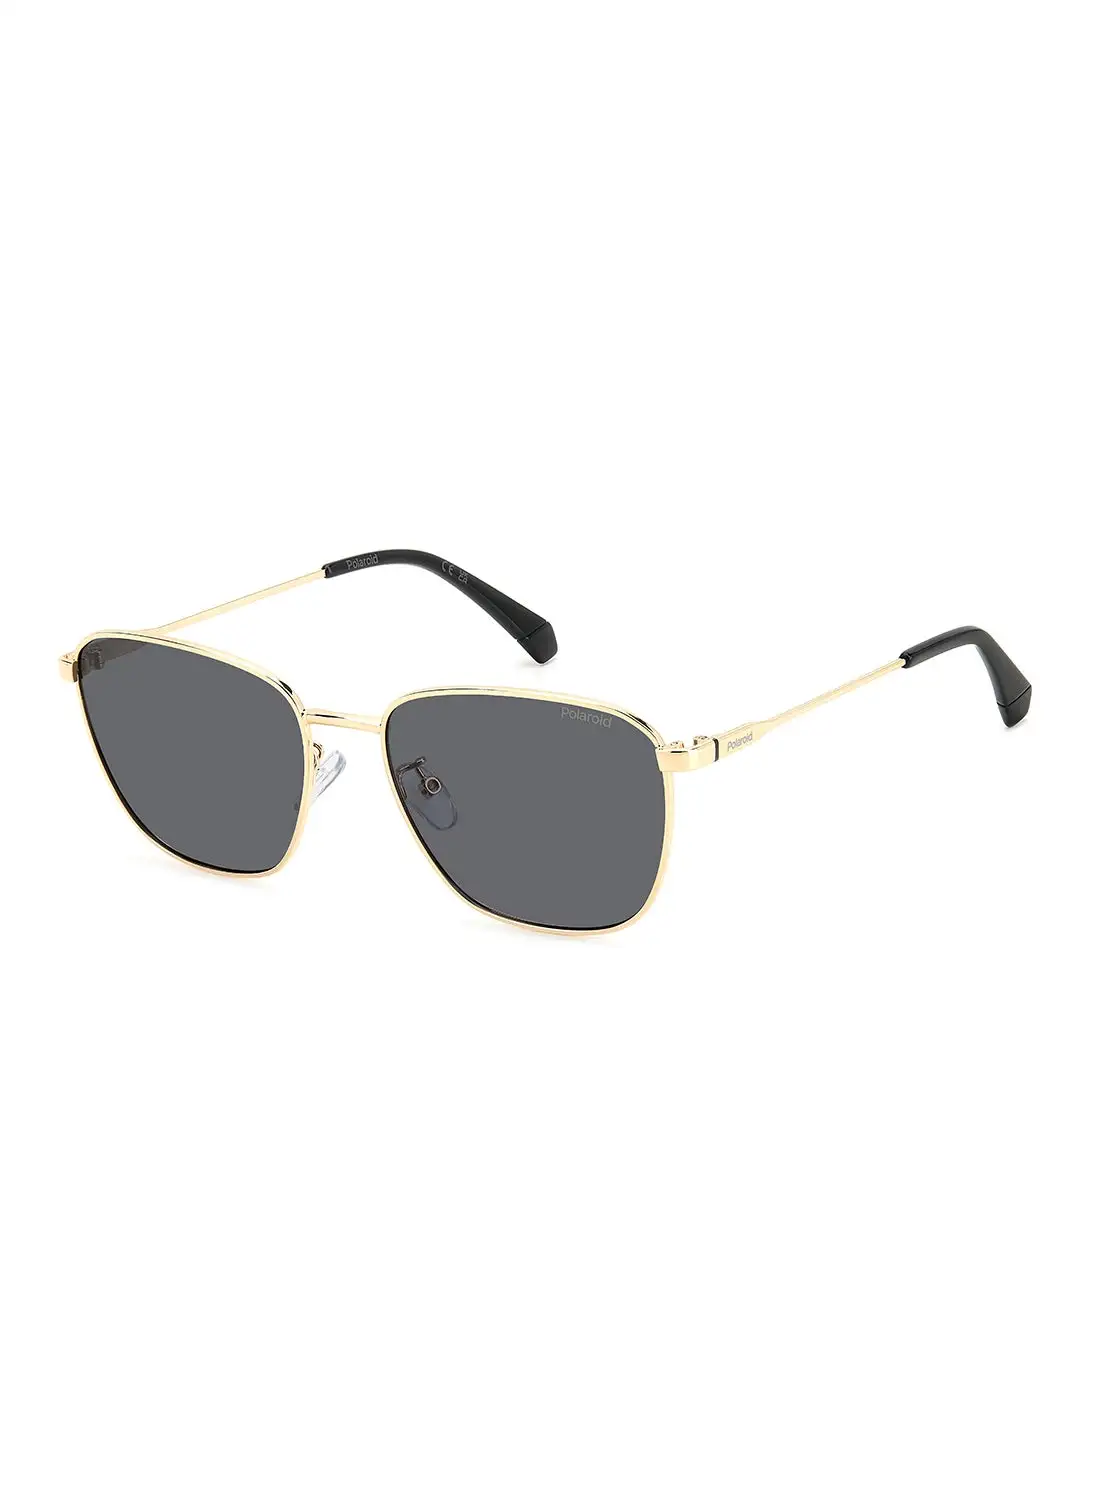 Polaroid Men's Polarized Rectangular Sunglasses - Pld 4159/G/S/X Gold Millimeter - Lens Size: 56 Mm